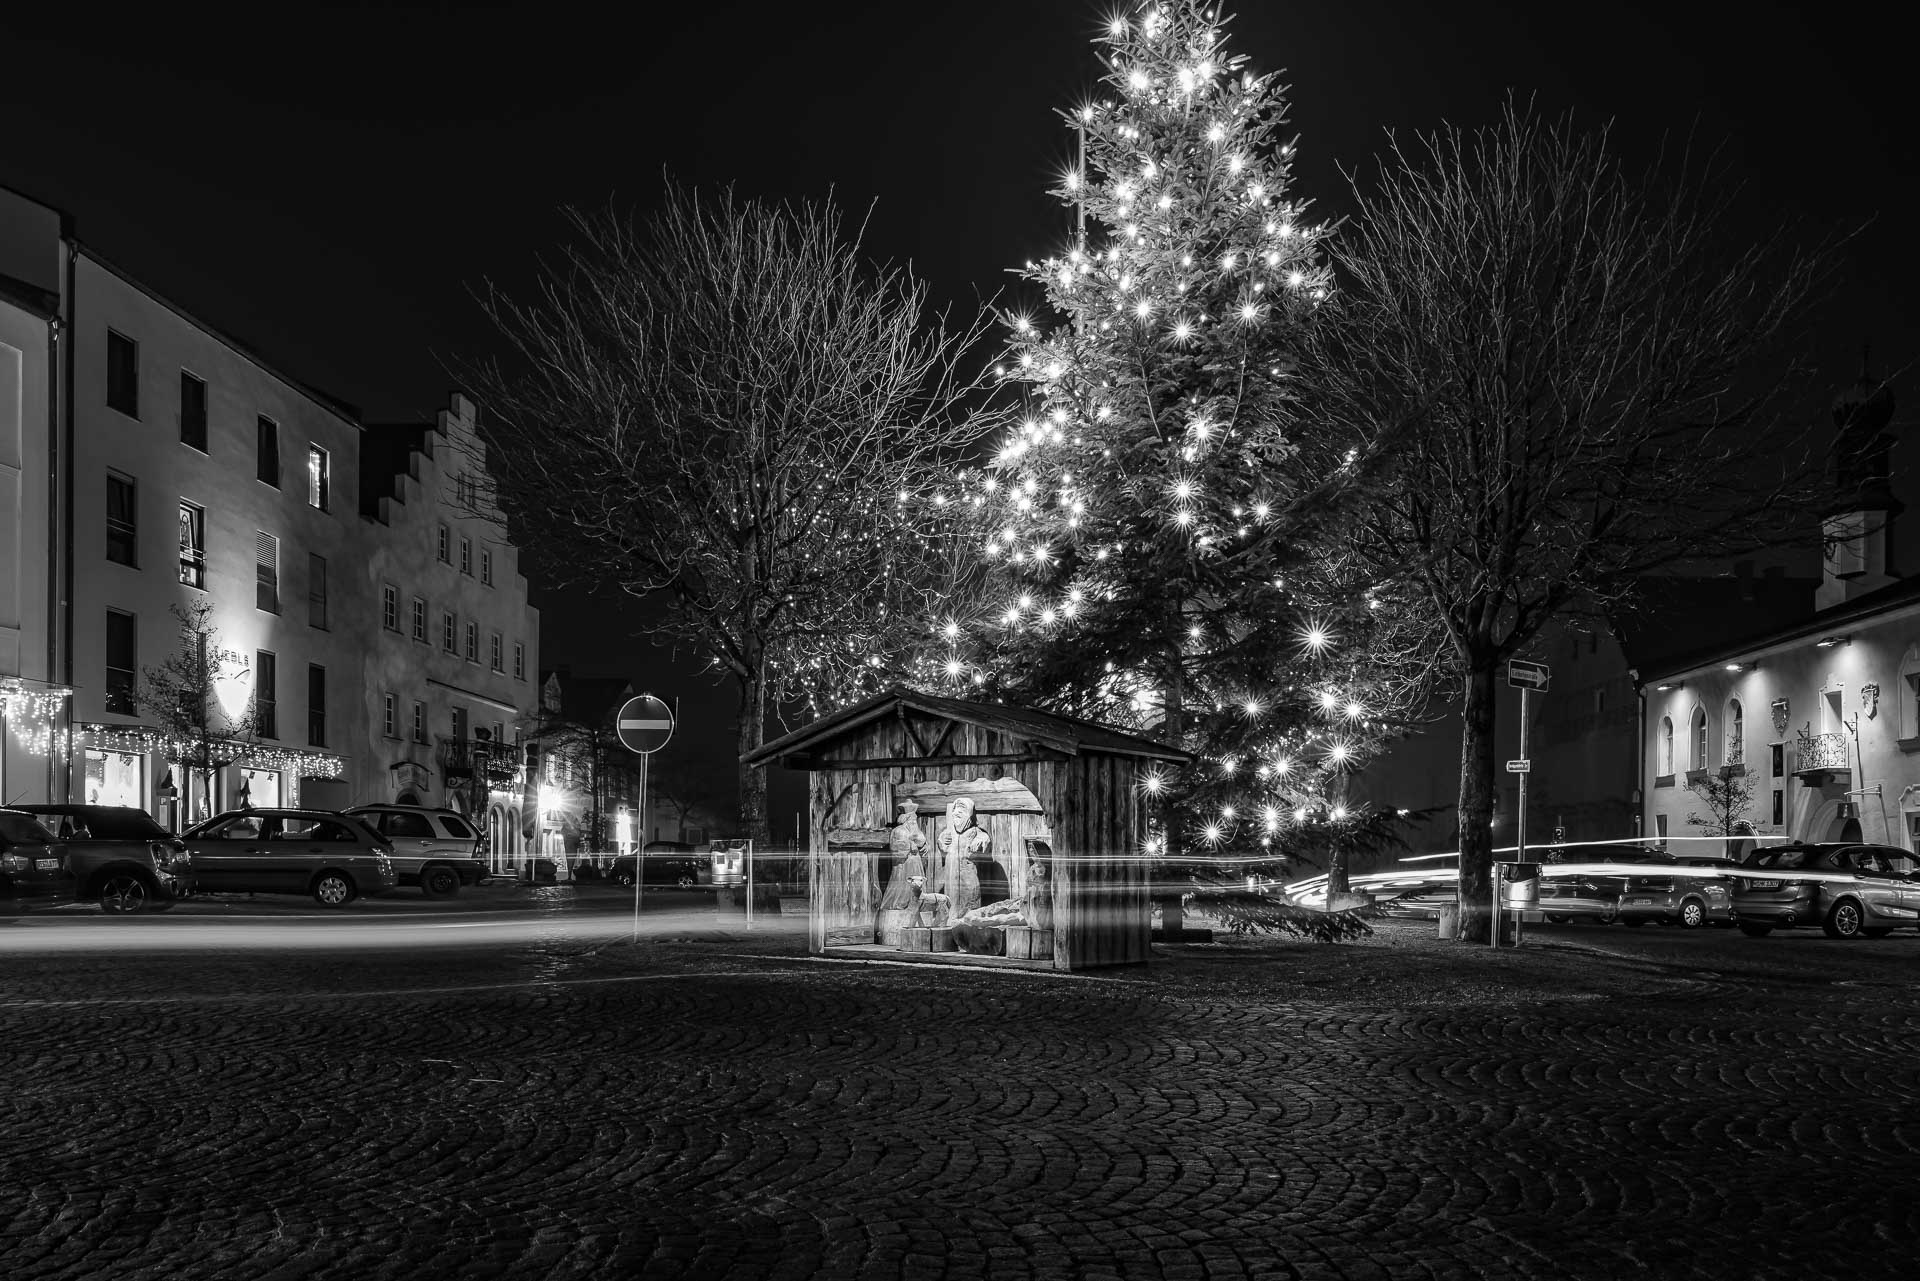 Nachts am Stadtplatz mit Weihnachtskrippe und beleuchtetem Weihnachtsbaum mit Lichtspuren von Autos